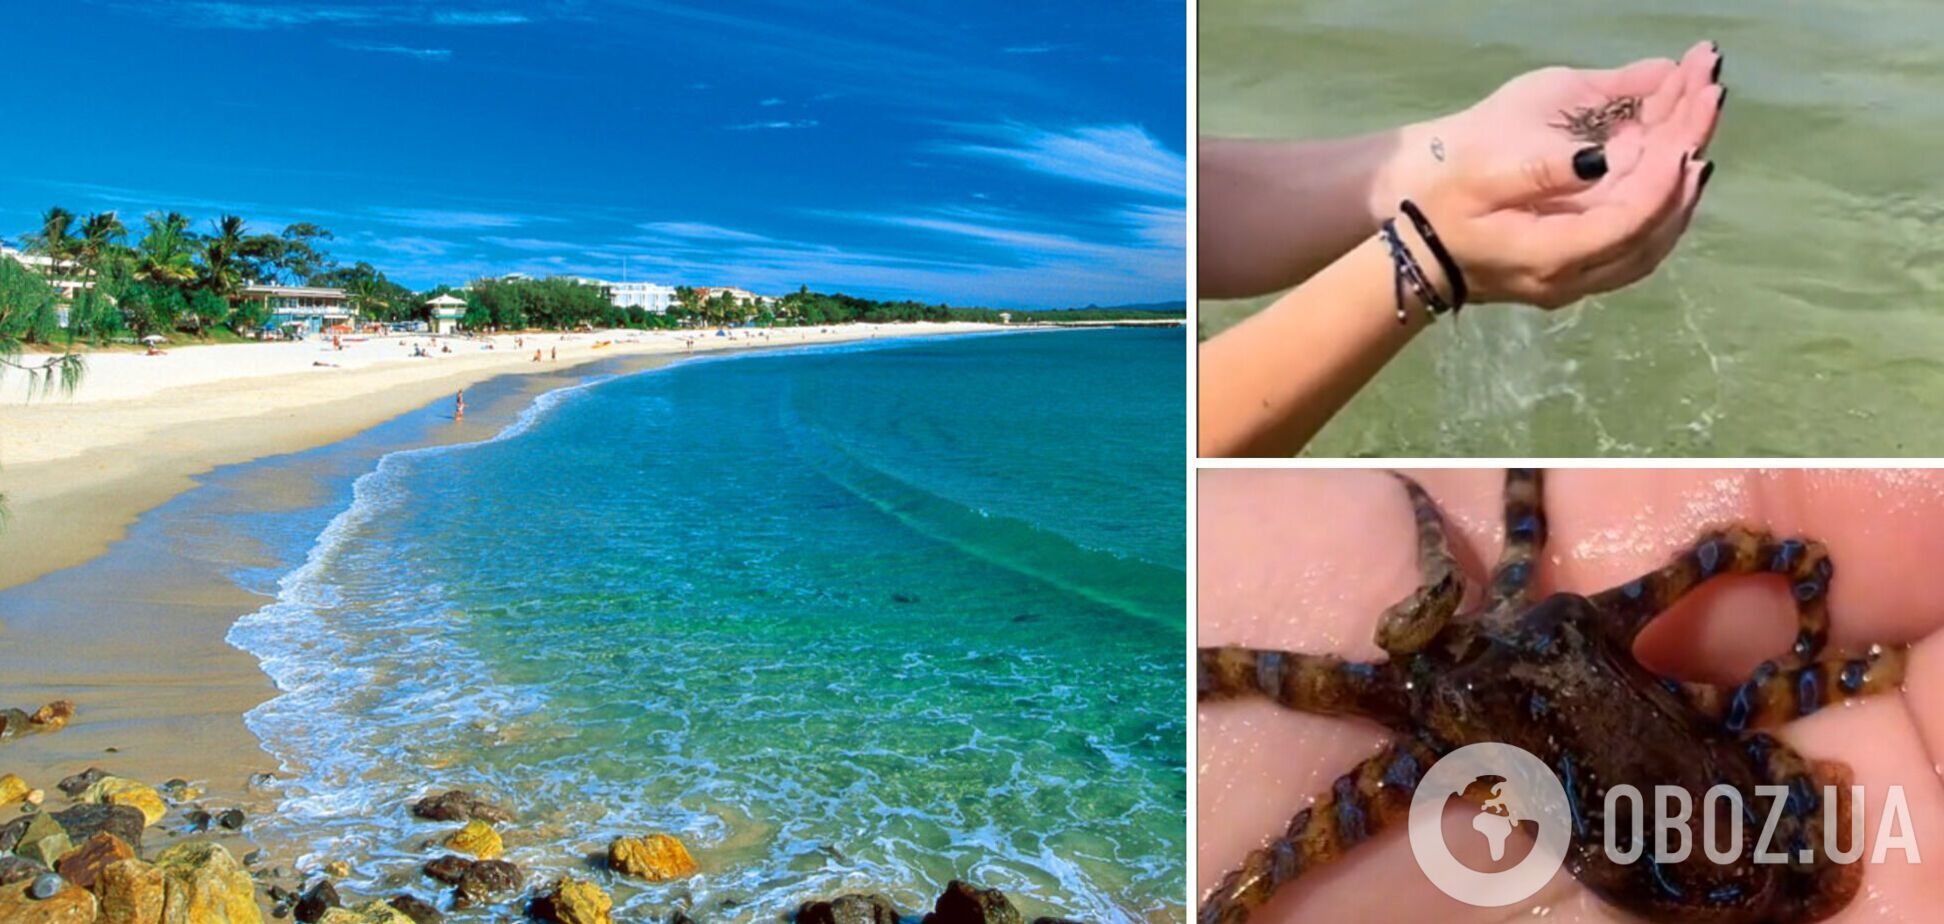 Австралийка чудом осталась жива после видео с милым осьминогом